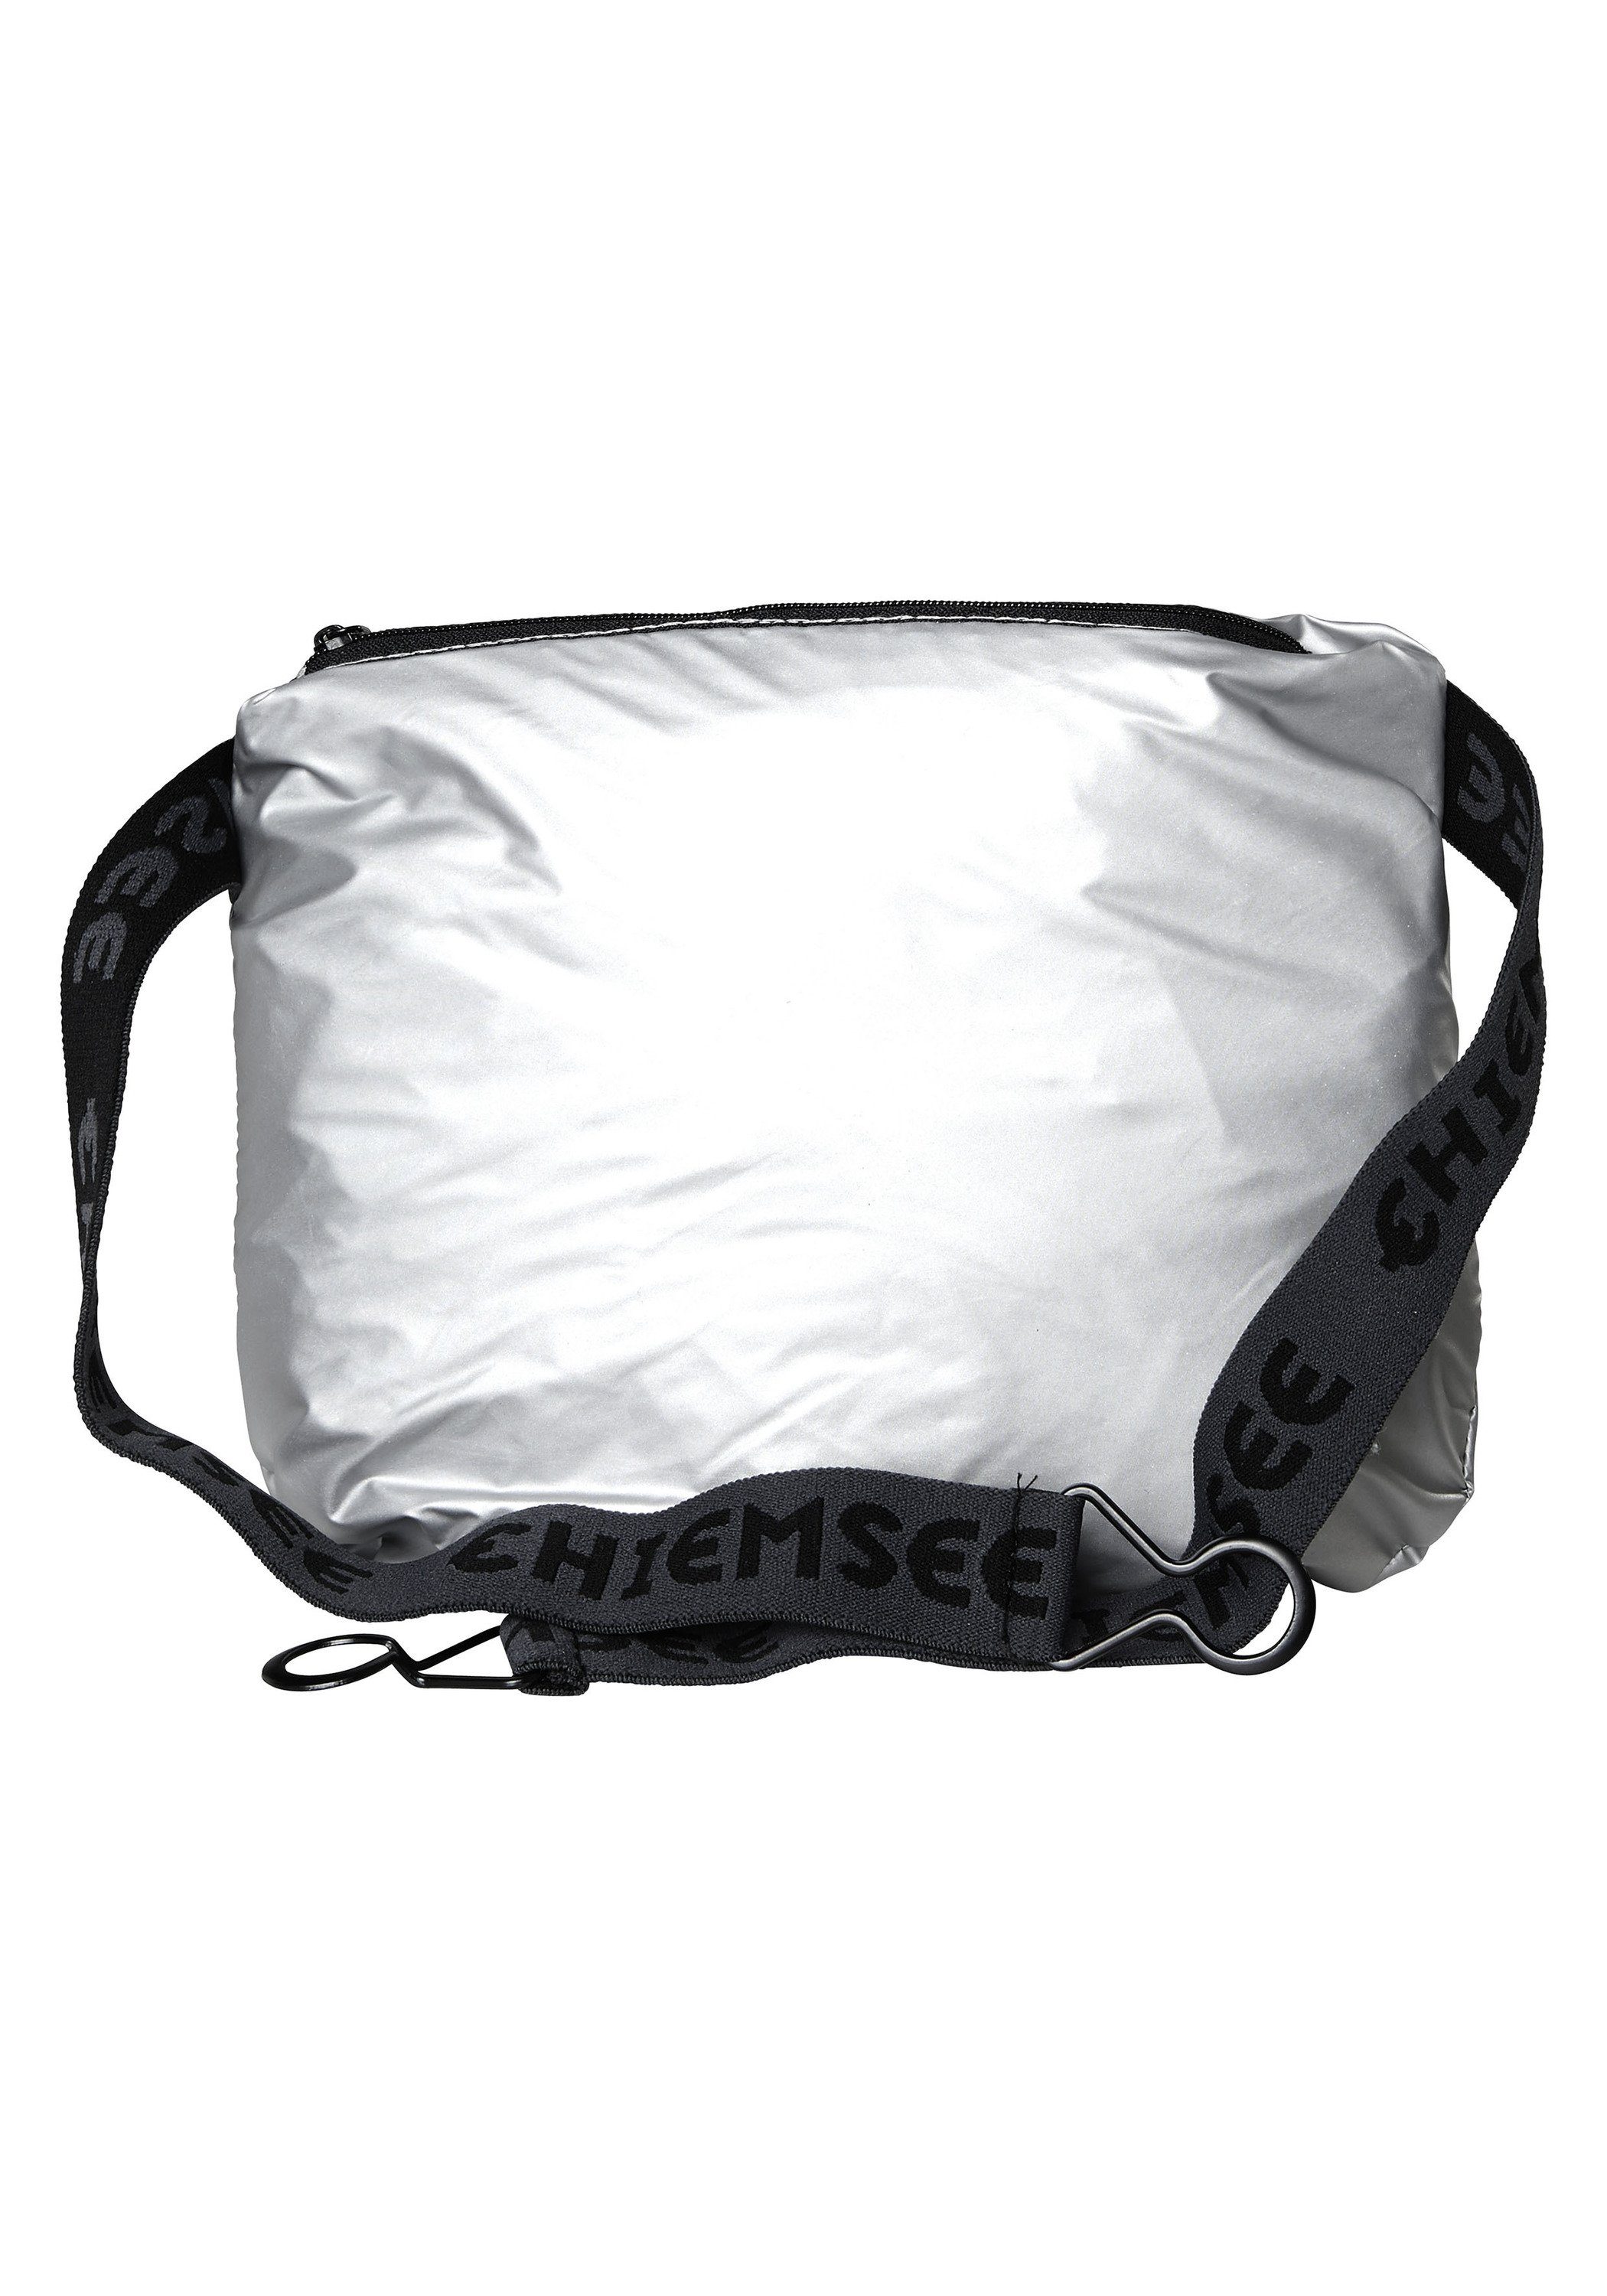 Chiemsee Outdoorjacke Regenjacke mit und 1 silber Taschen-Funktion Jumper-Motiv